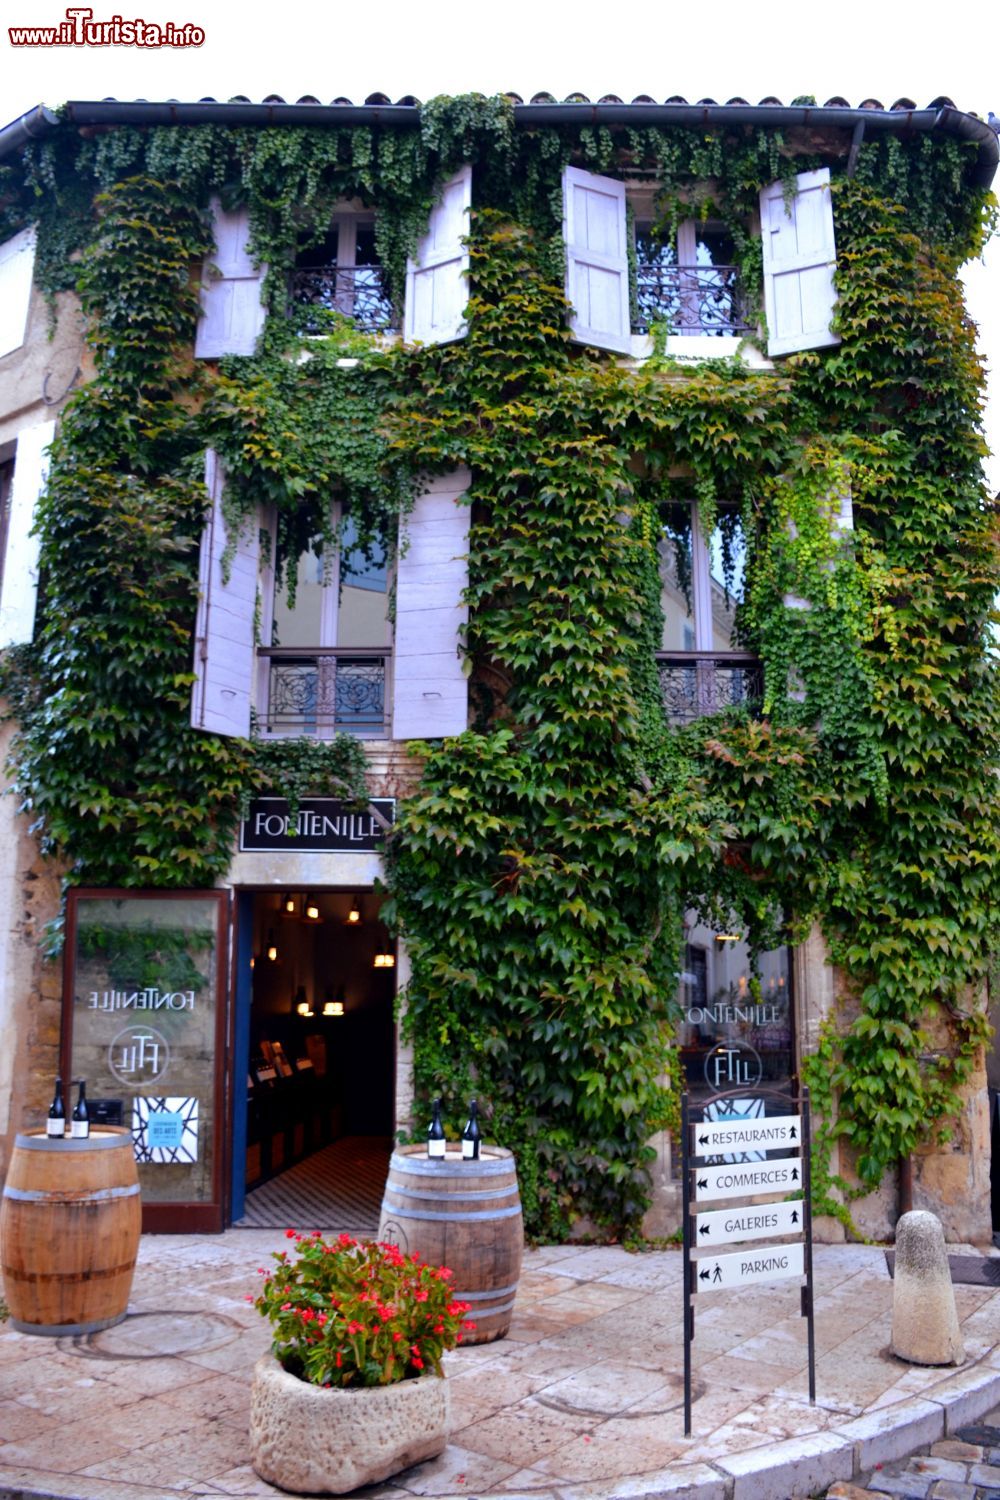 Immagine Un edificio coperto di vegetazione del centro storico di Lourmarin, nel parco regionale del Luberon (Francia).